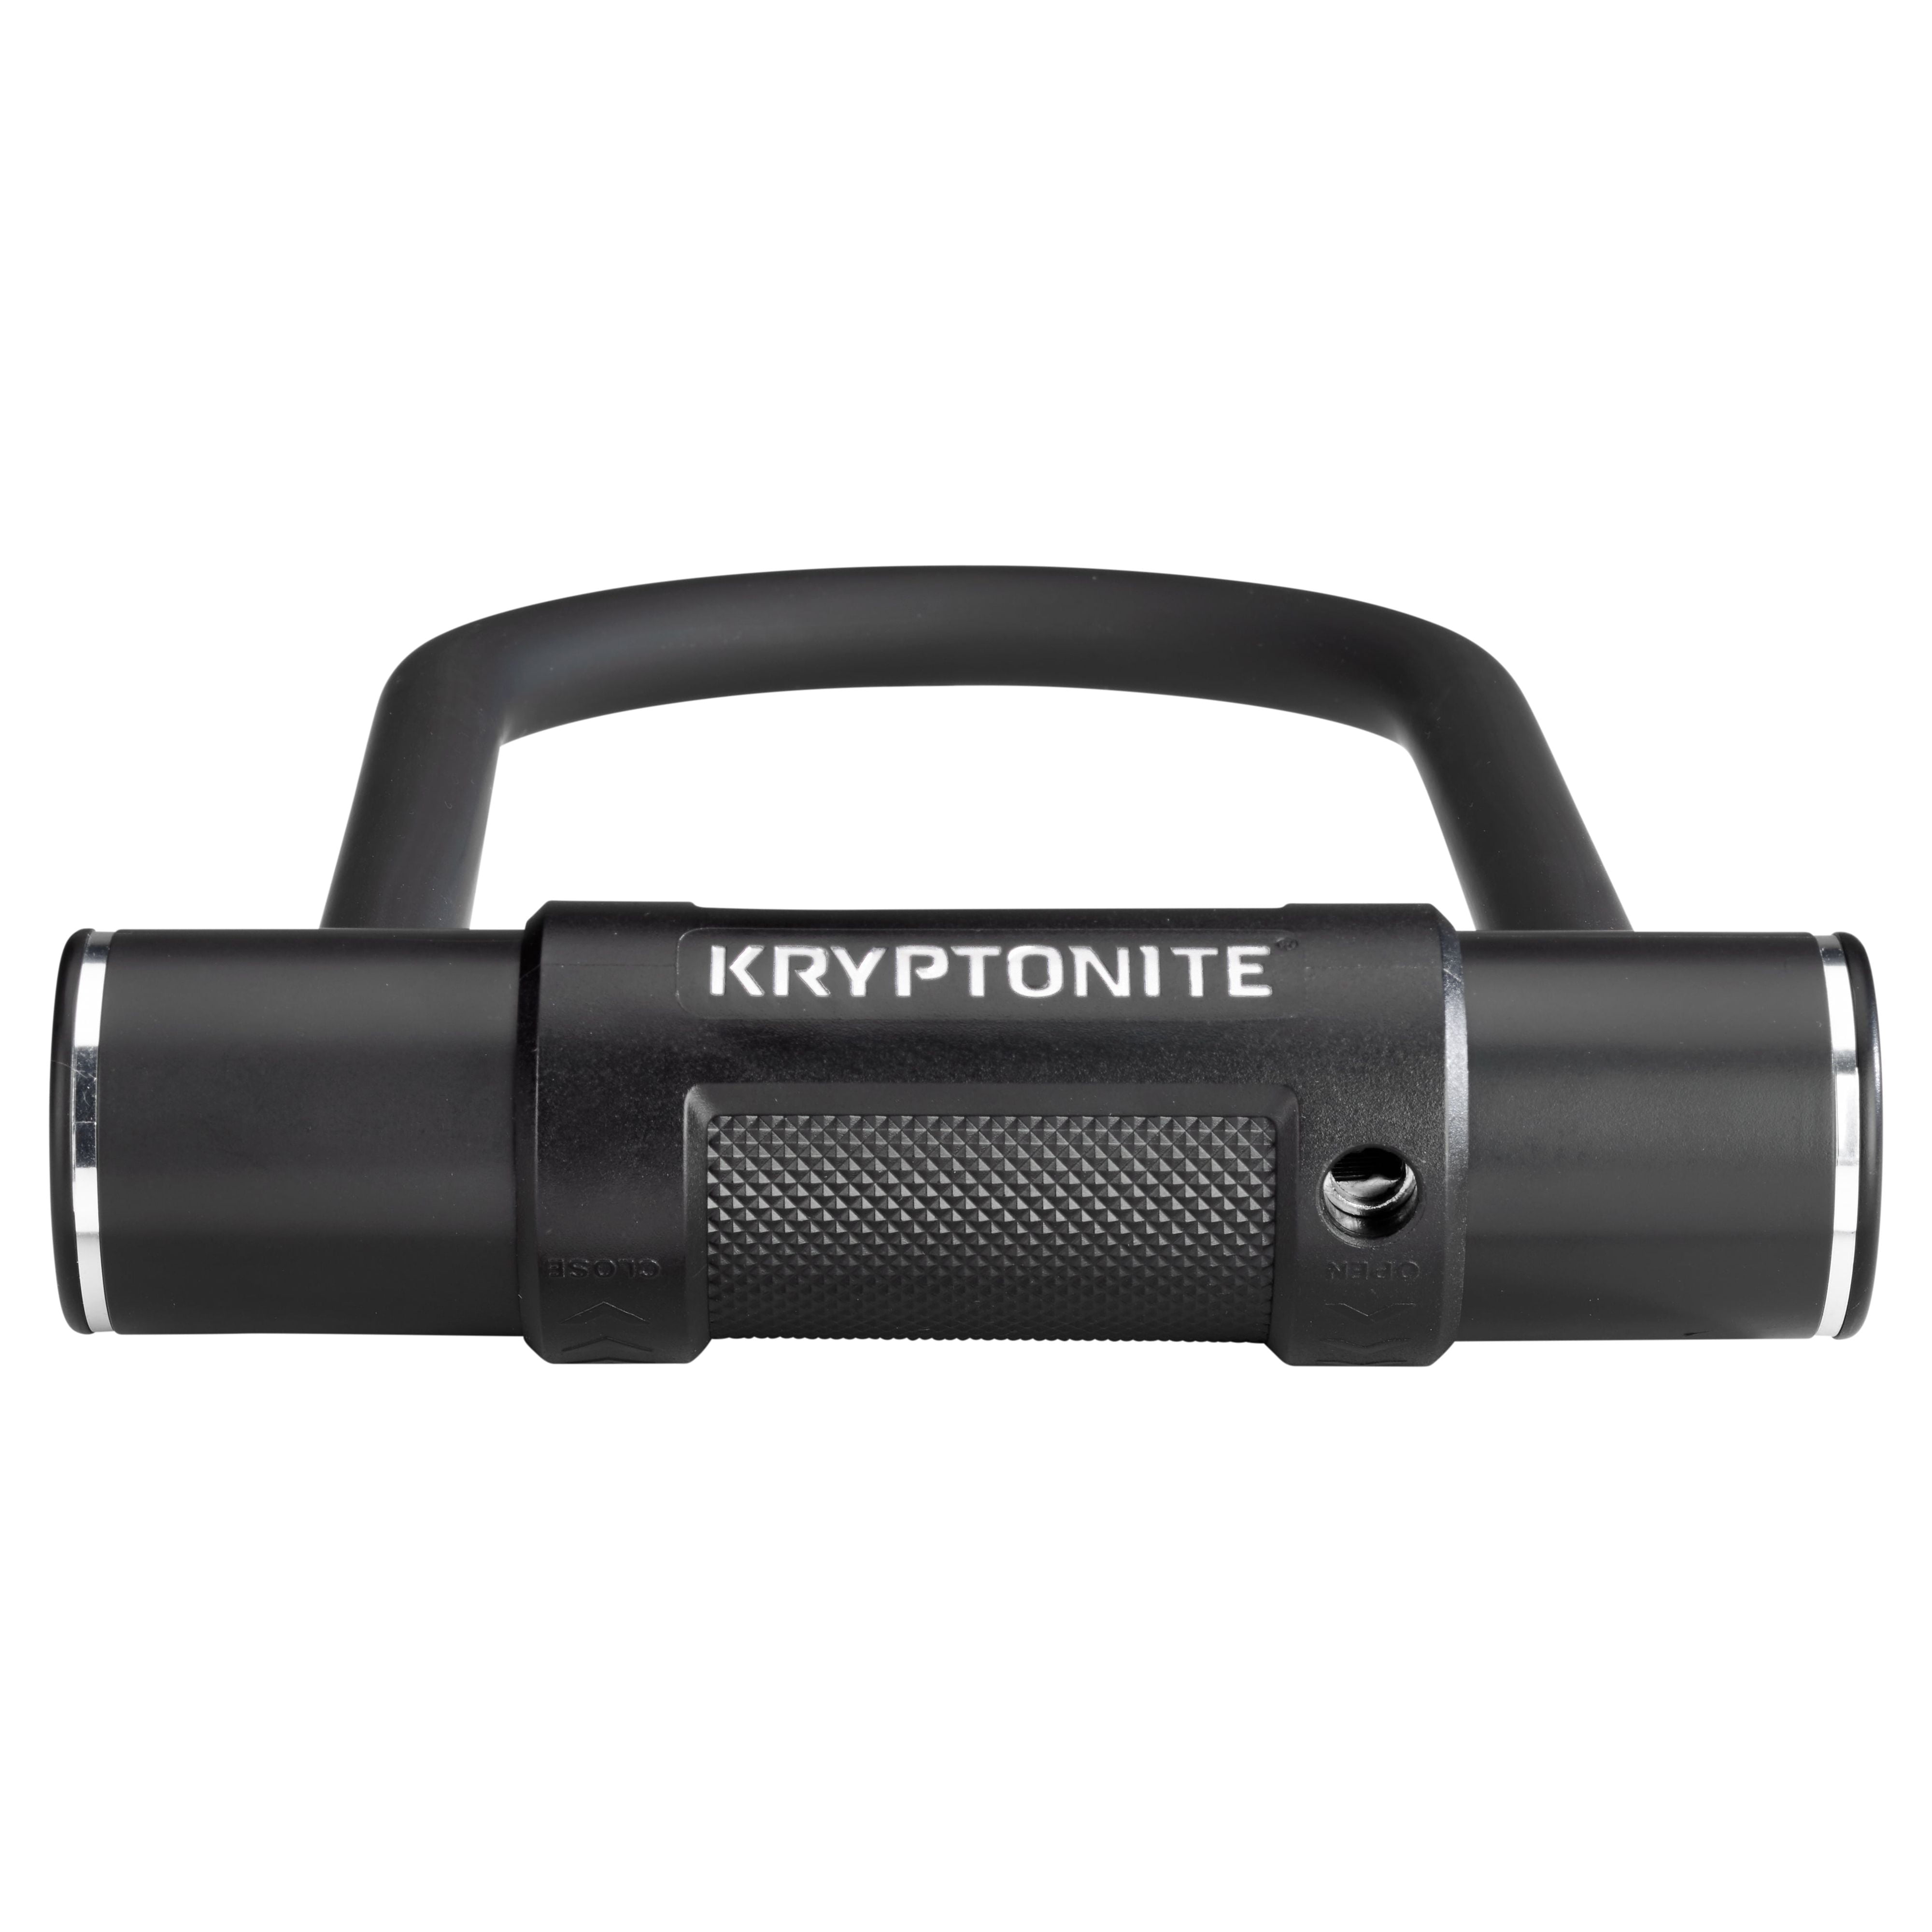 Kryptonite 12.7mm U-Lock Bicycle Lock Standard